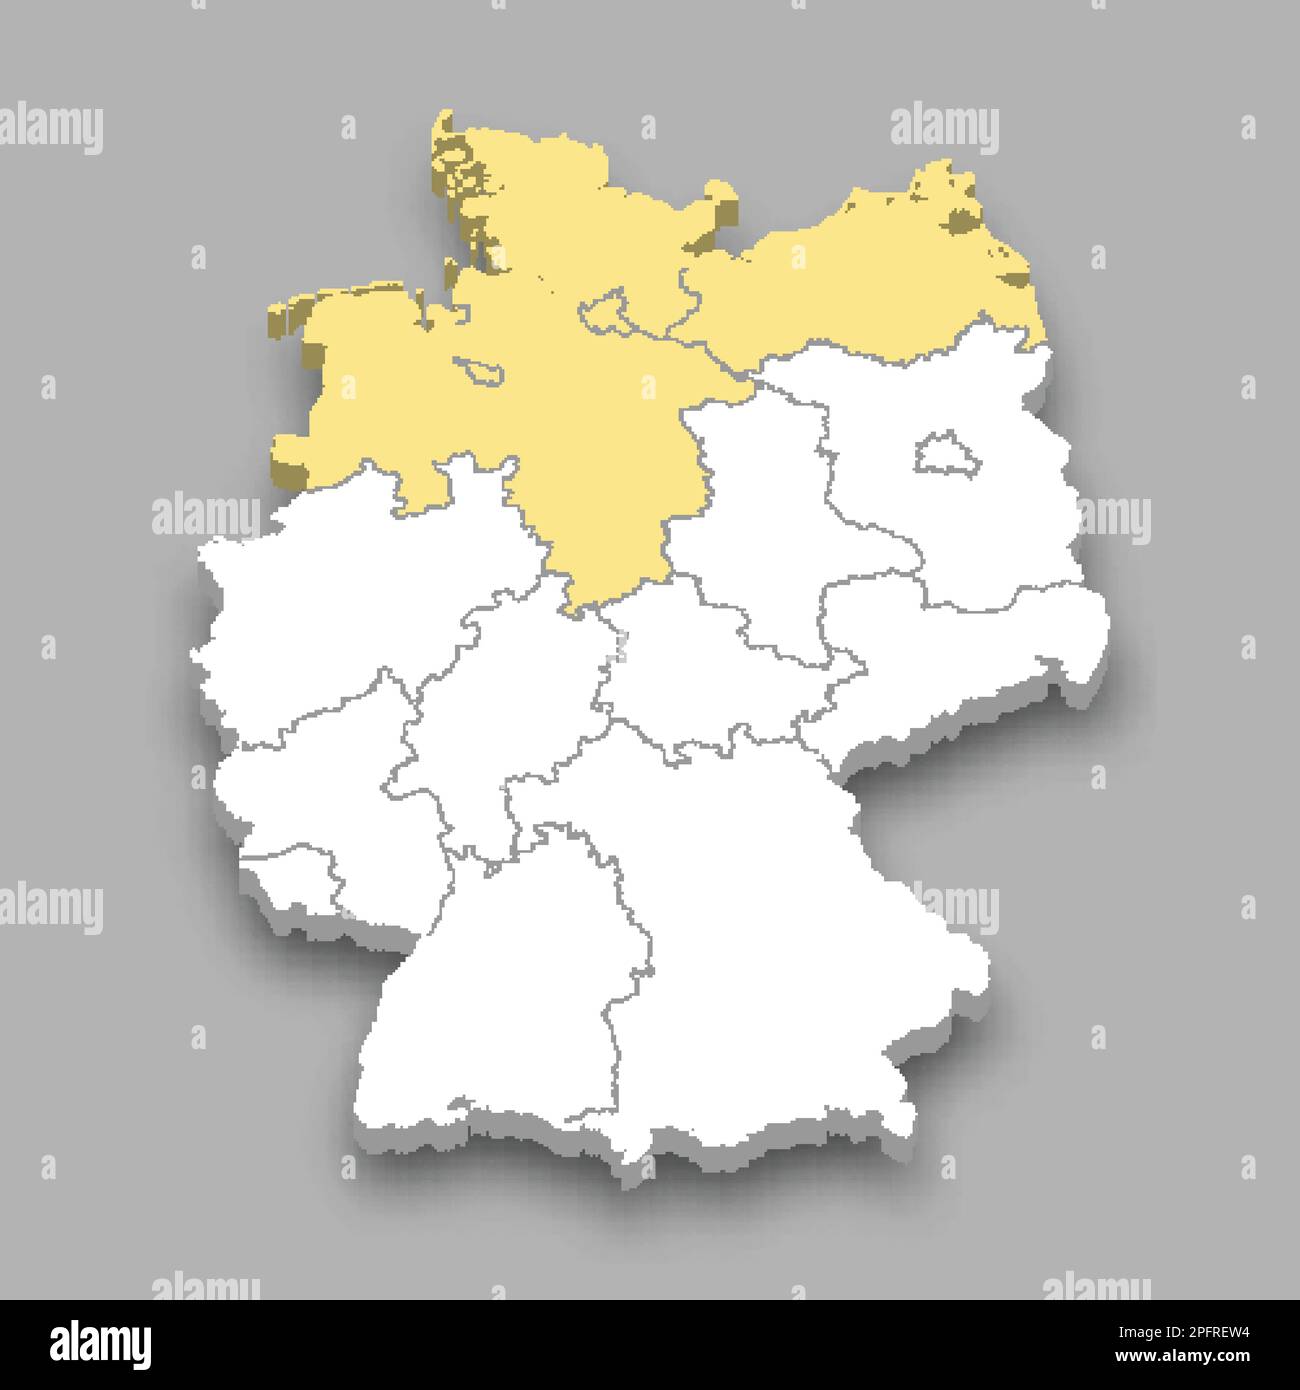 Position der nördlichen Region innerhalb der isometrischen 3D-Karte Deutschlands Stock Vektor